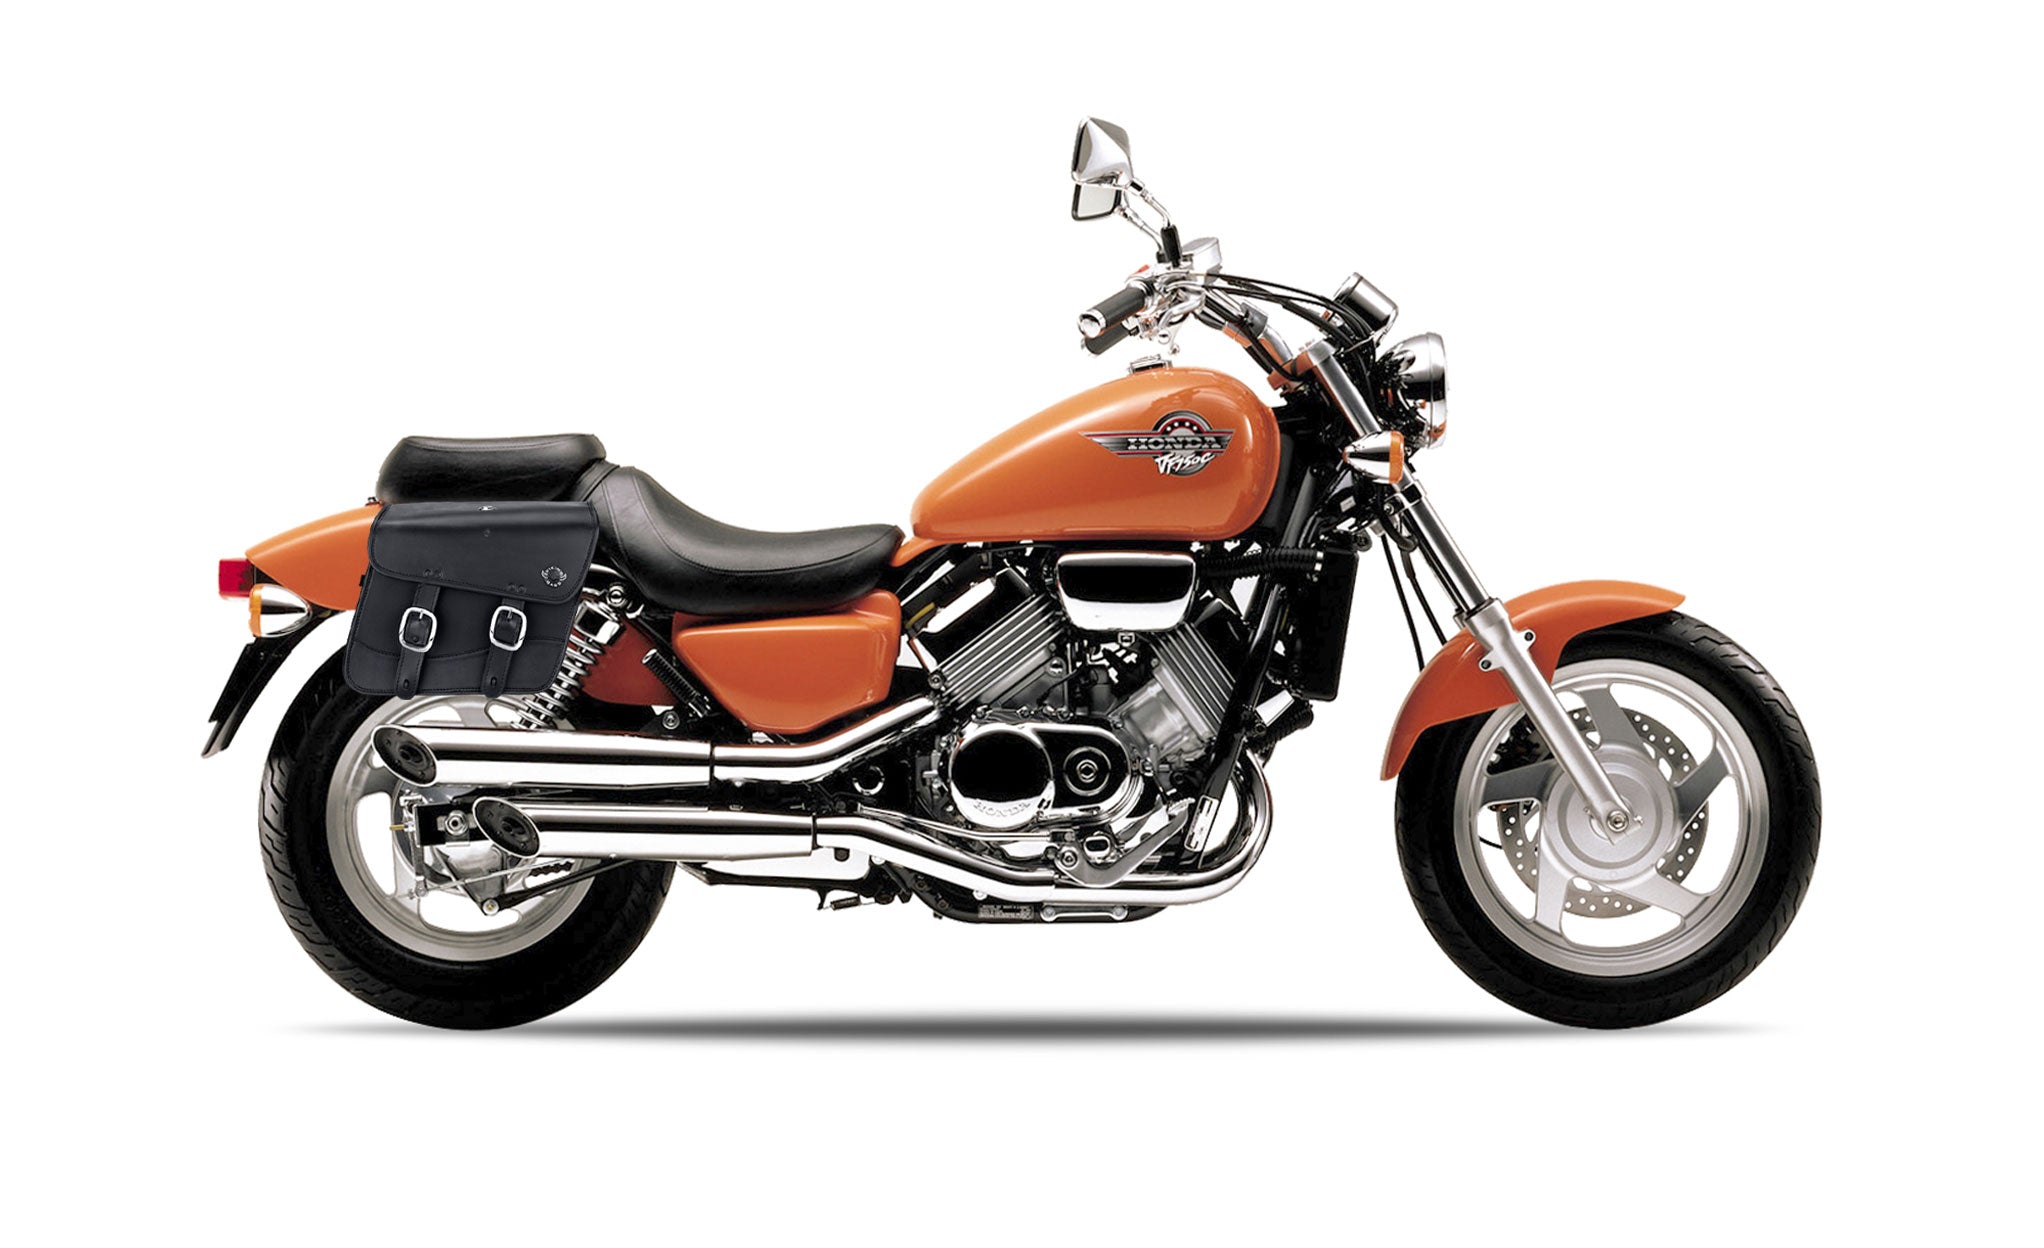 Viking Thor Medium Honda Magna 750 Vf750C Leather Motorcycle Saddlebags on Bike Photo @expand